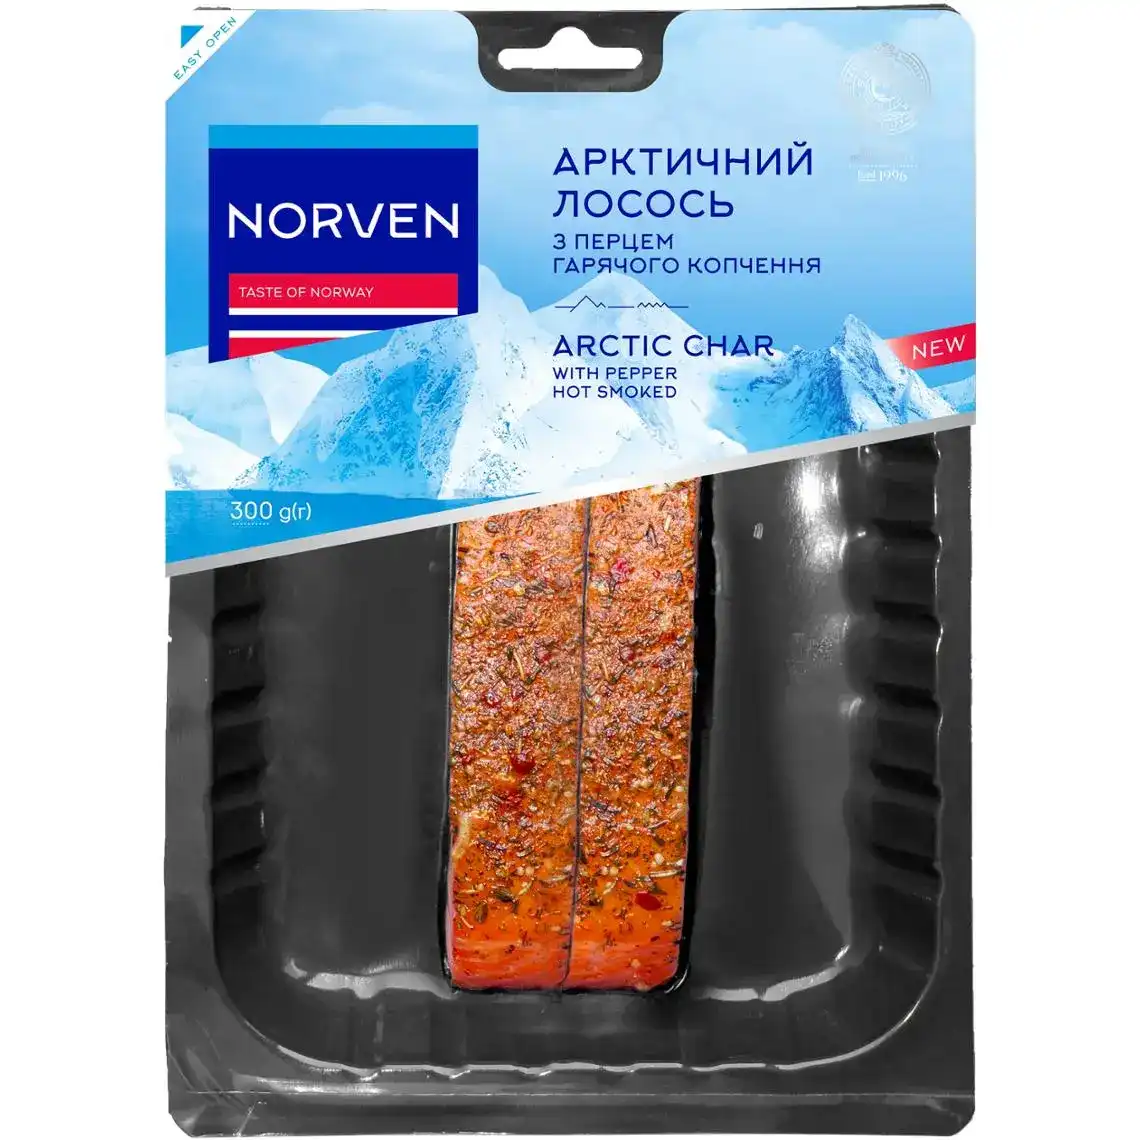 Лосось Norven Арктичний філе-куоск гарячого копчення з перцем 300 г